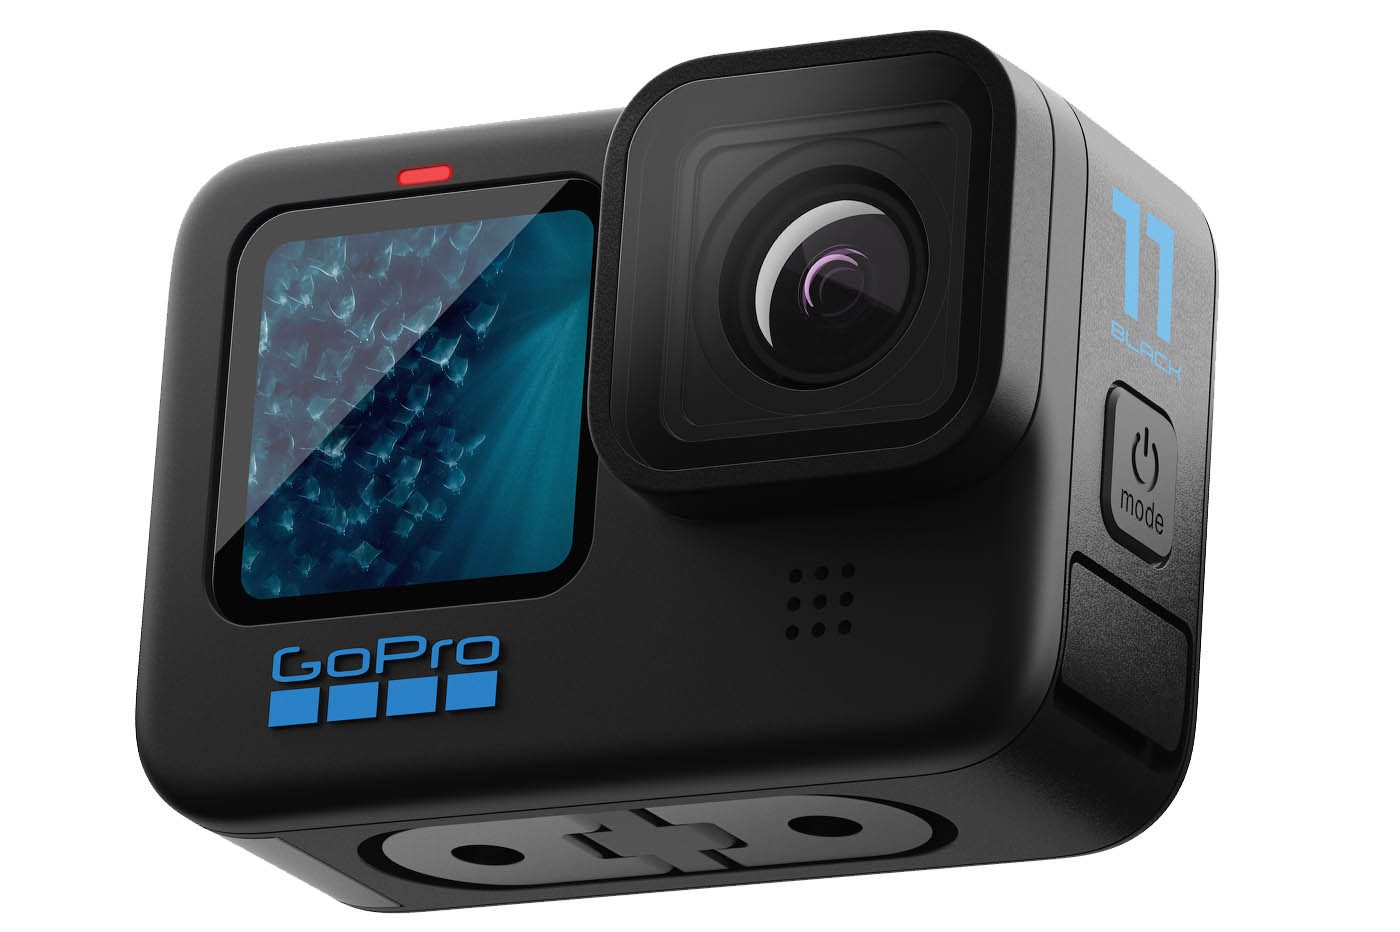 Kit boîtier transparent pour caméra d'action ou GoPro HERO 9 pas